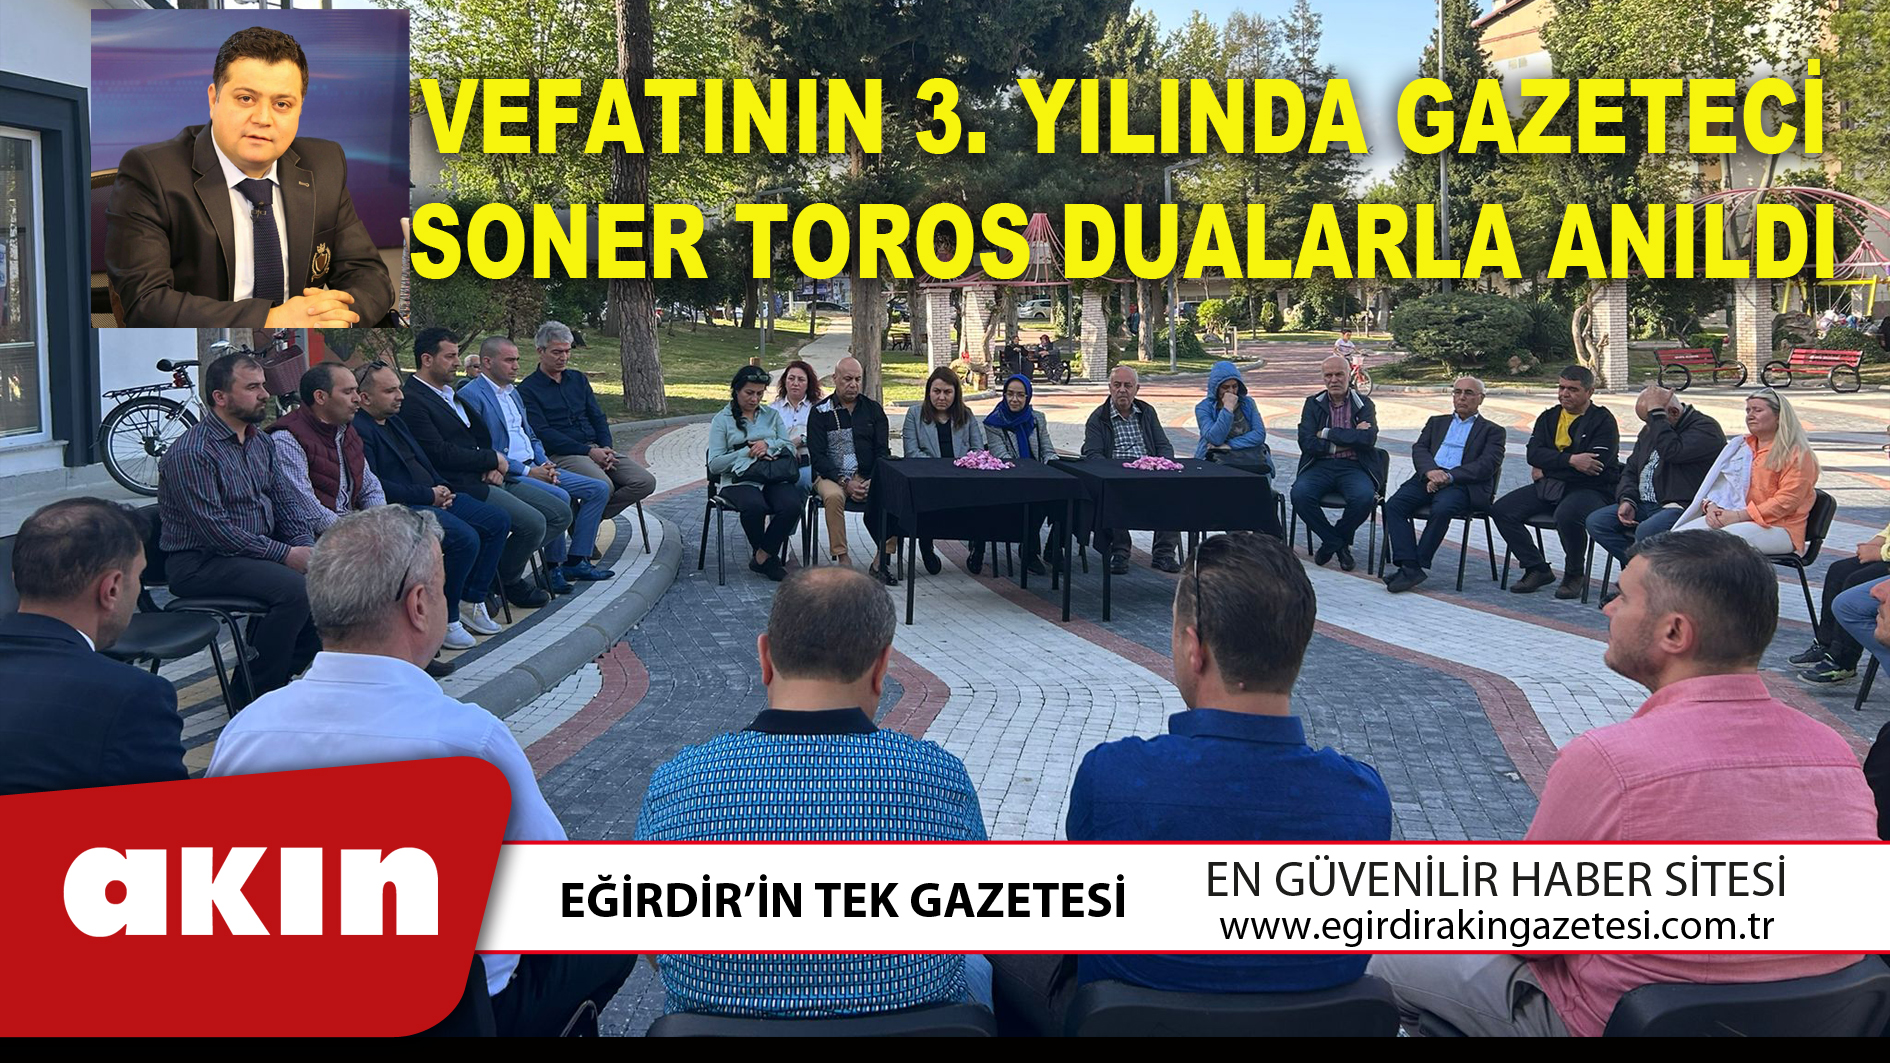 VEFATININ 3. YILINDA GAZETECİ SONER TOROS DUALARLA ANILDI